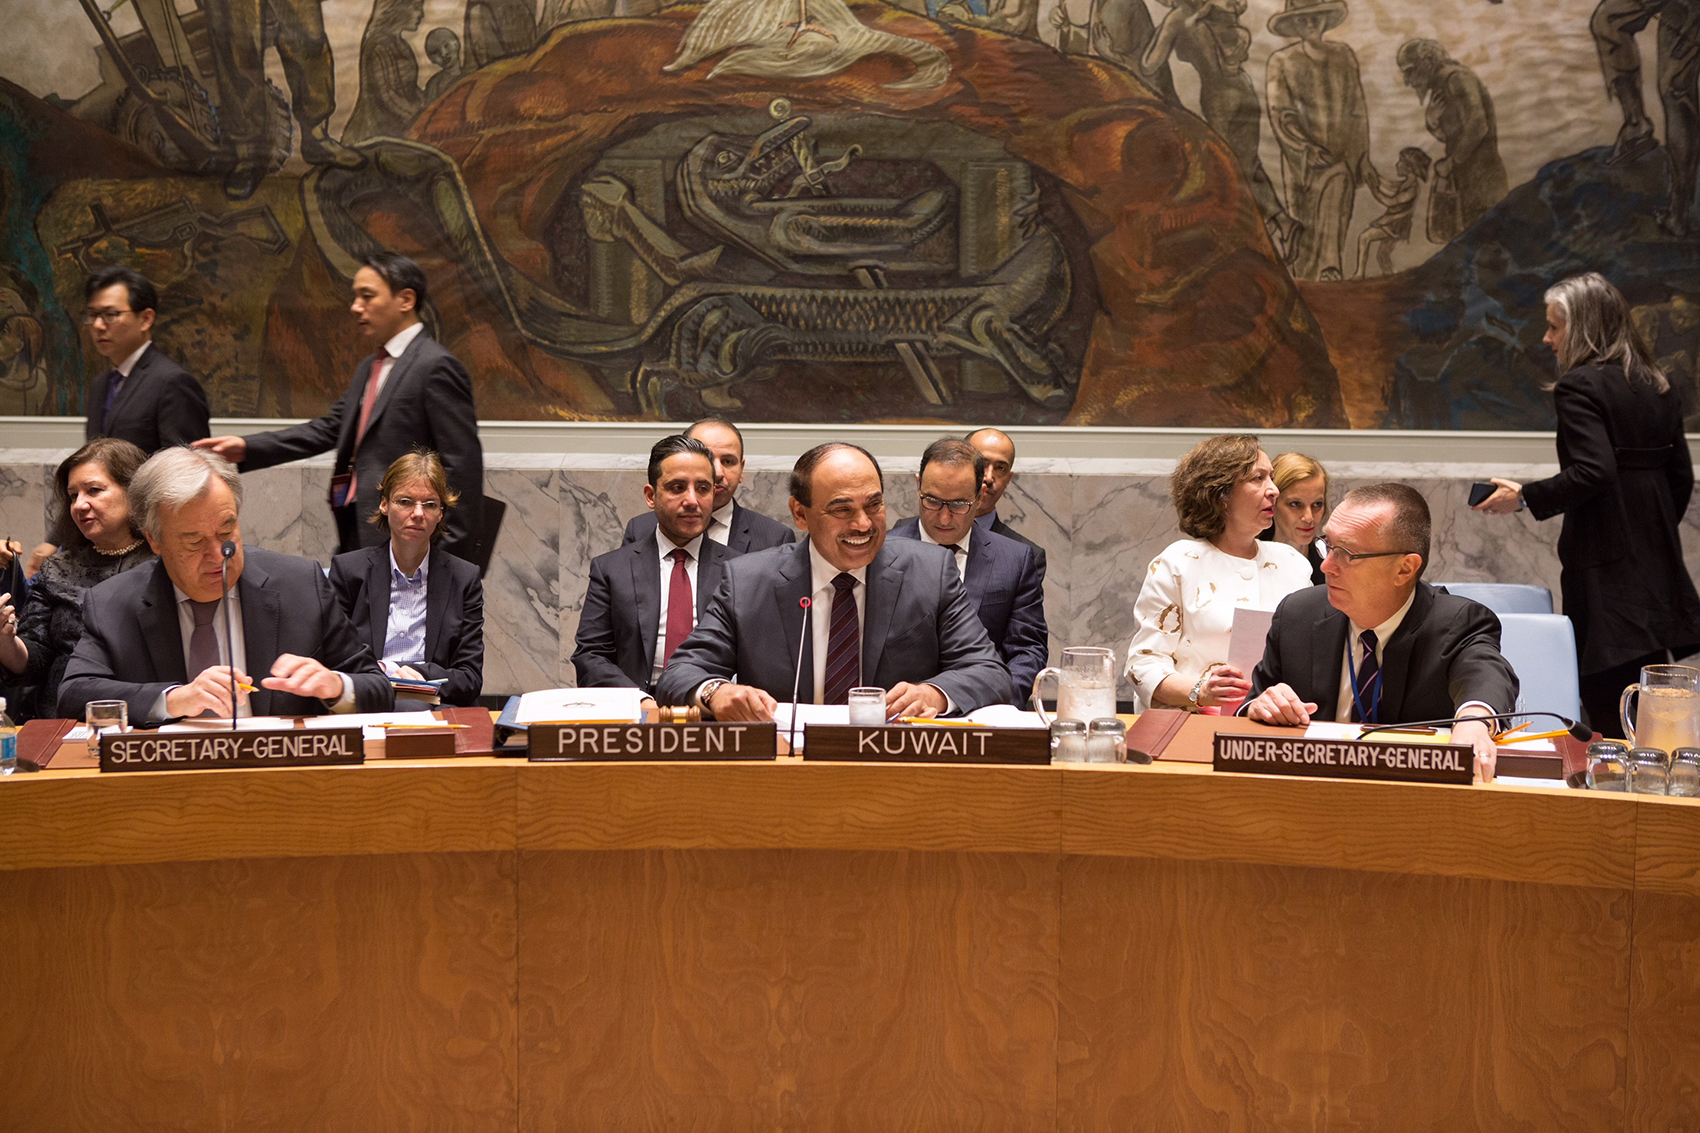 الشيخ صباح خالد الحمد الصباح نائب رئيس مجلس الوزراء وزير الخارجية يترأس جلسة مجلس الأمن رفيعة المستوى حول أهداف ومبادئ ميثاق الأمم المتحدة